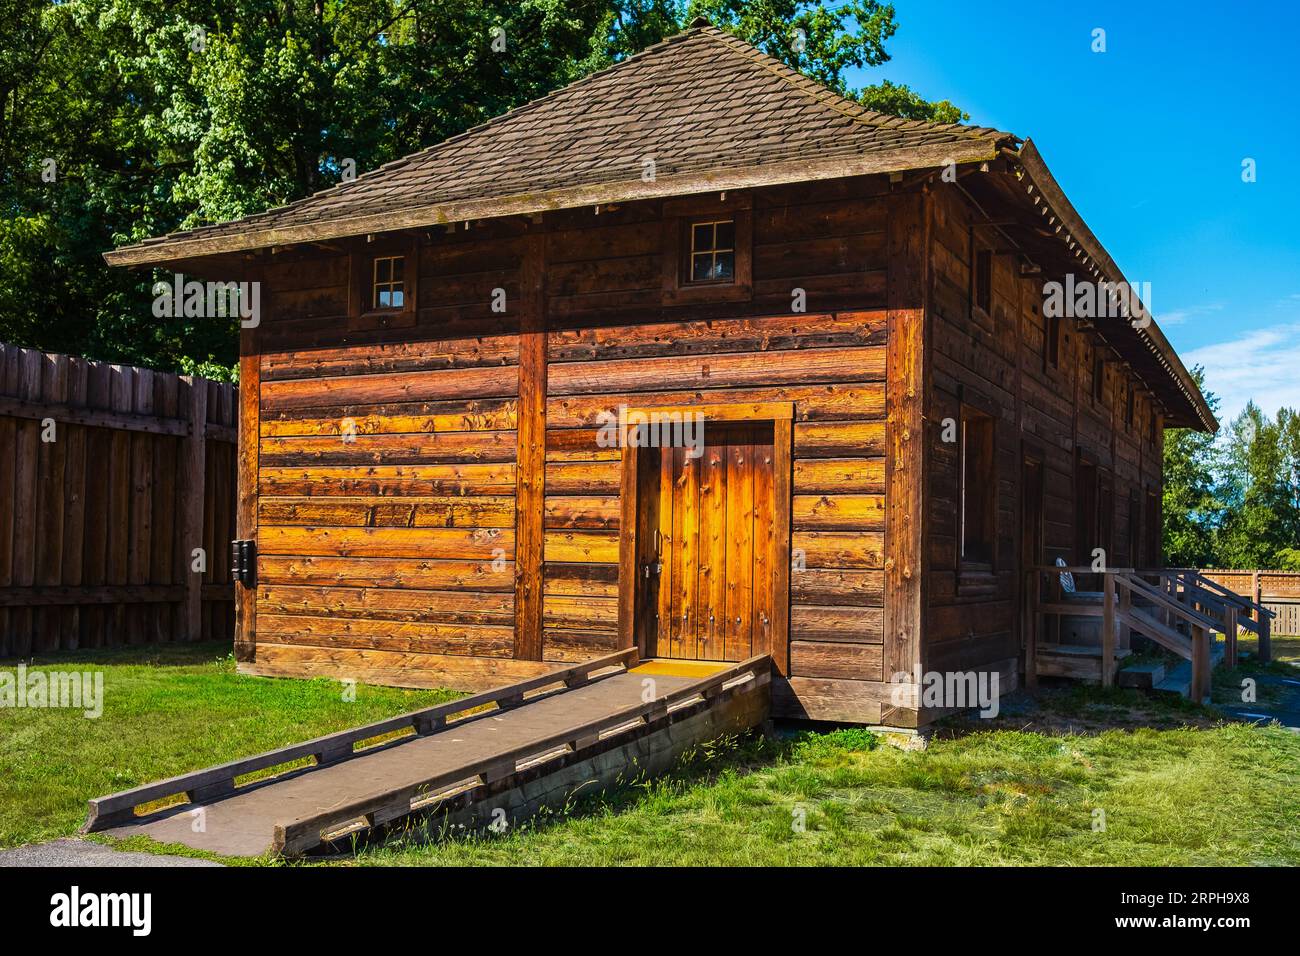 Une vieille maison traditionnelle rustique en bois cabane en rondins avec de petites fenêtres. Maison de montagne en bois construite à partir de rondins de bois dans une zone rurale. Villag en bois brun Banque D'Images